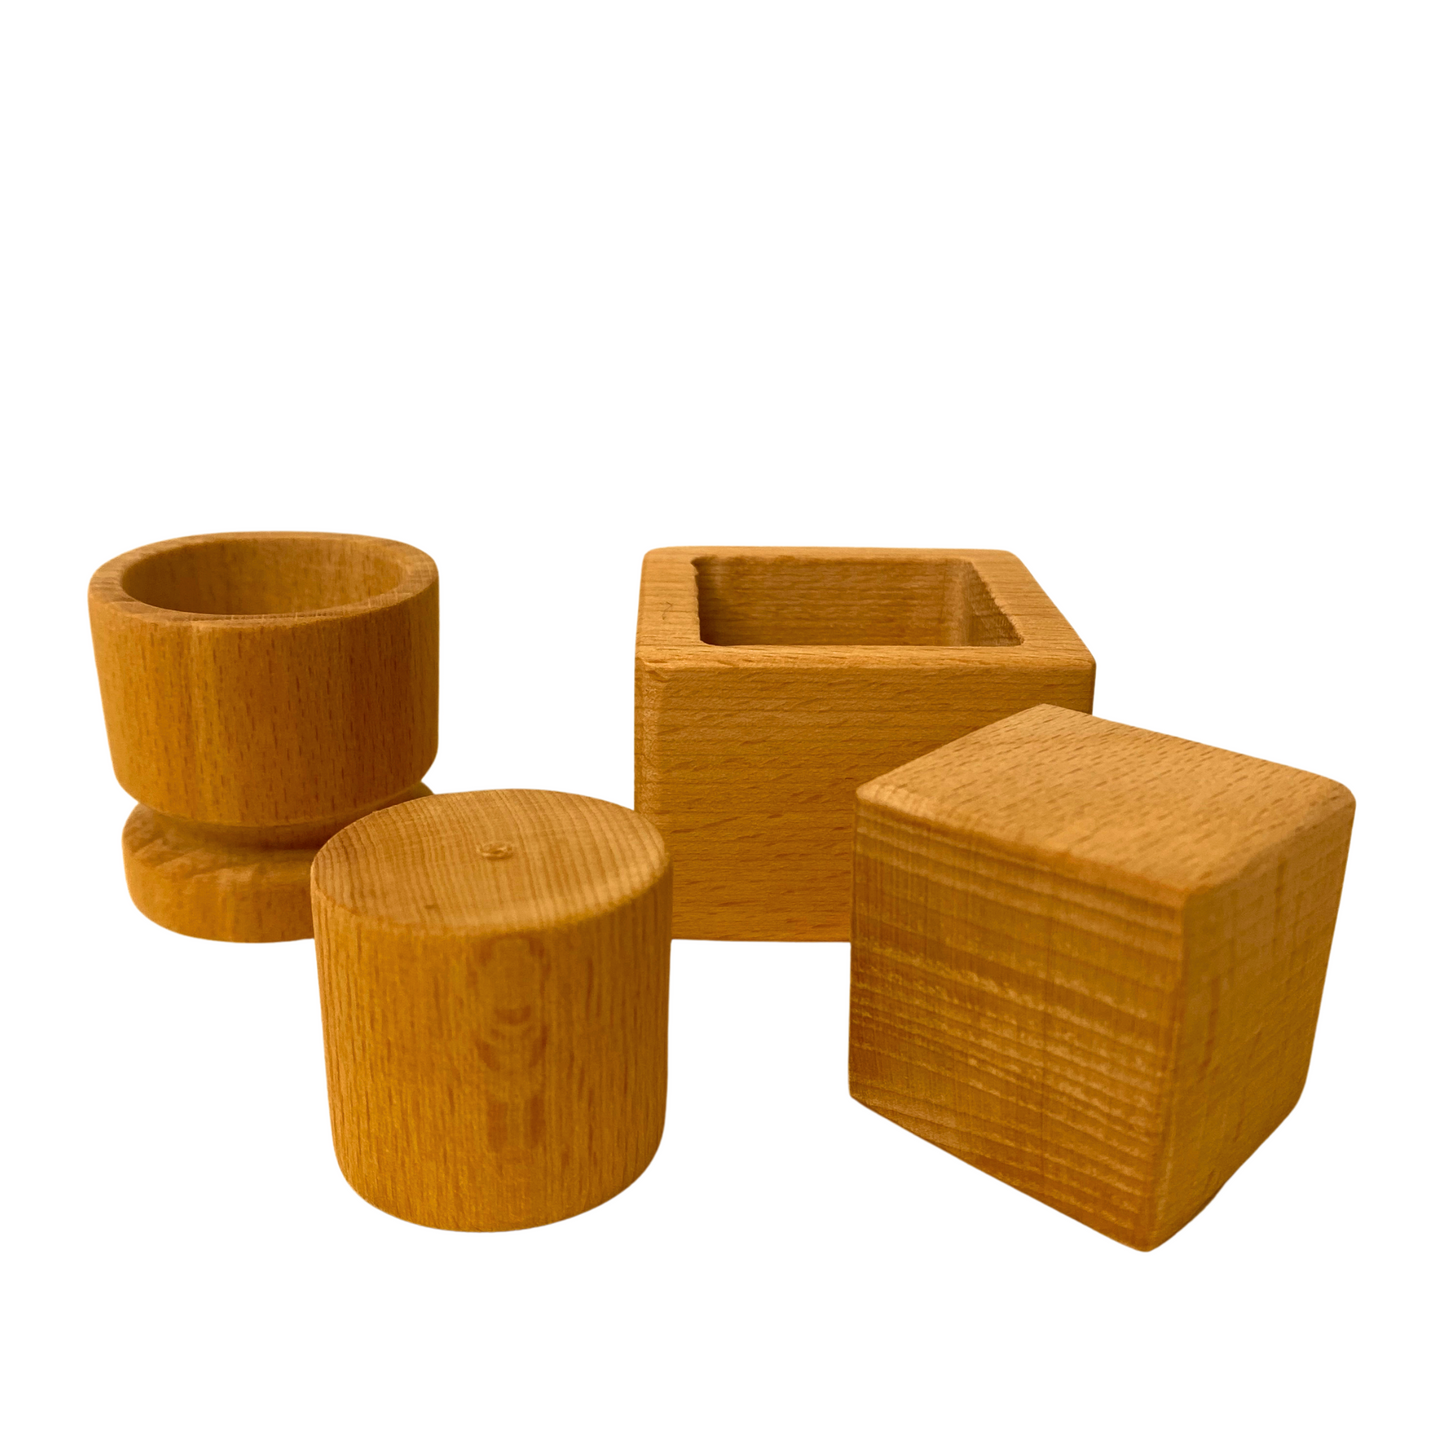 Matériel Montessori de motricité fine : cylindre dans une tasse et cube dans une boîte